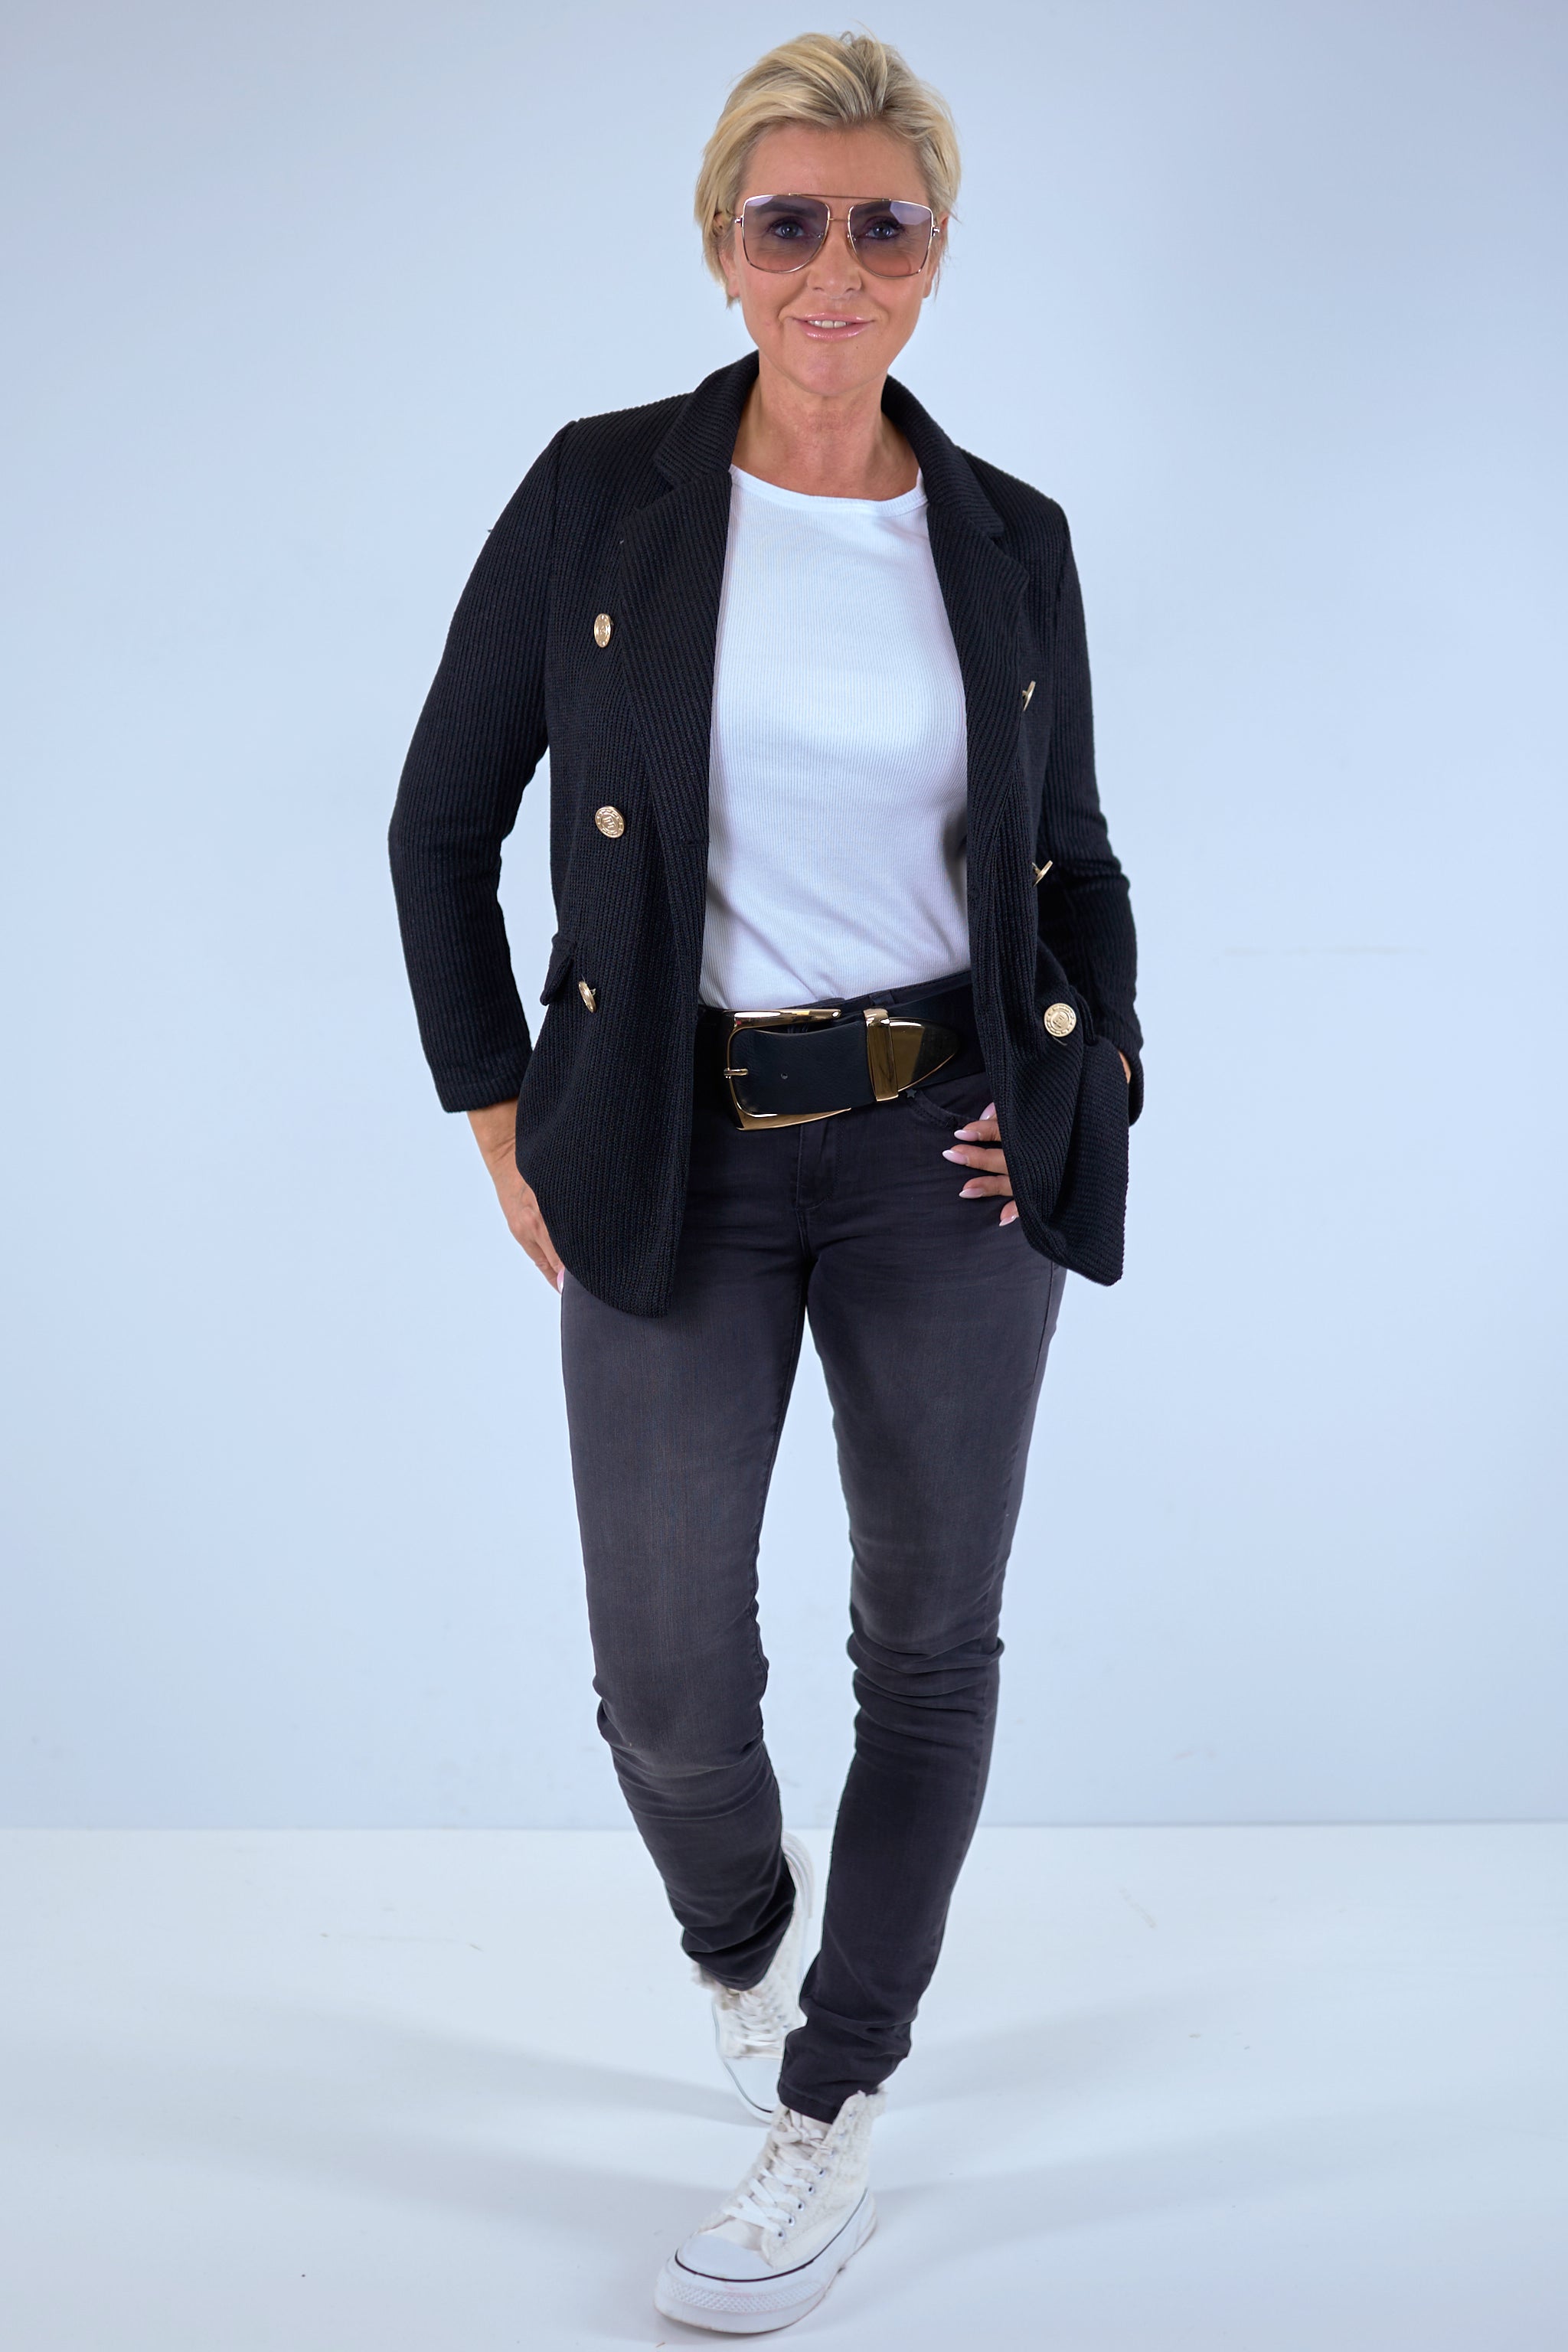 Jeans von Timezone in anthrazit bei Trends & Lifestyle Deutschland GmbH